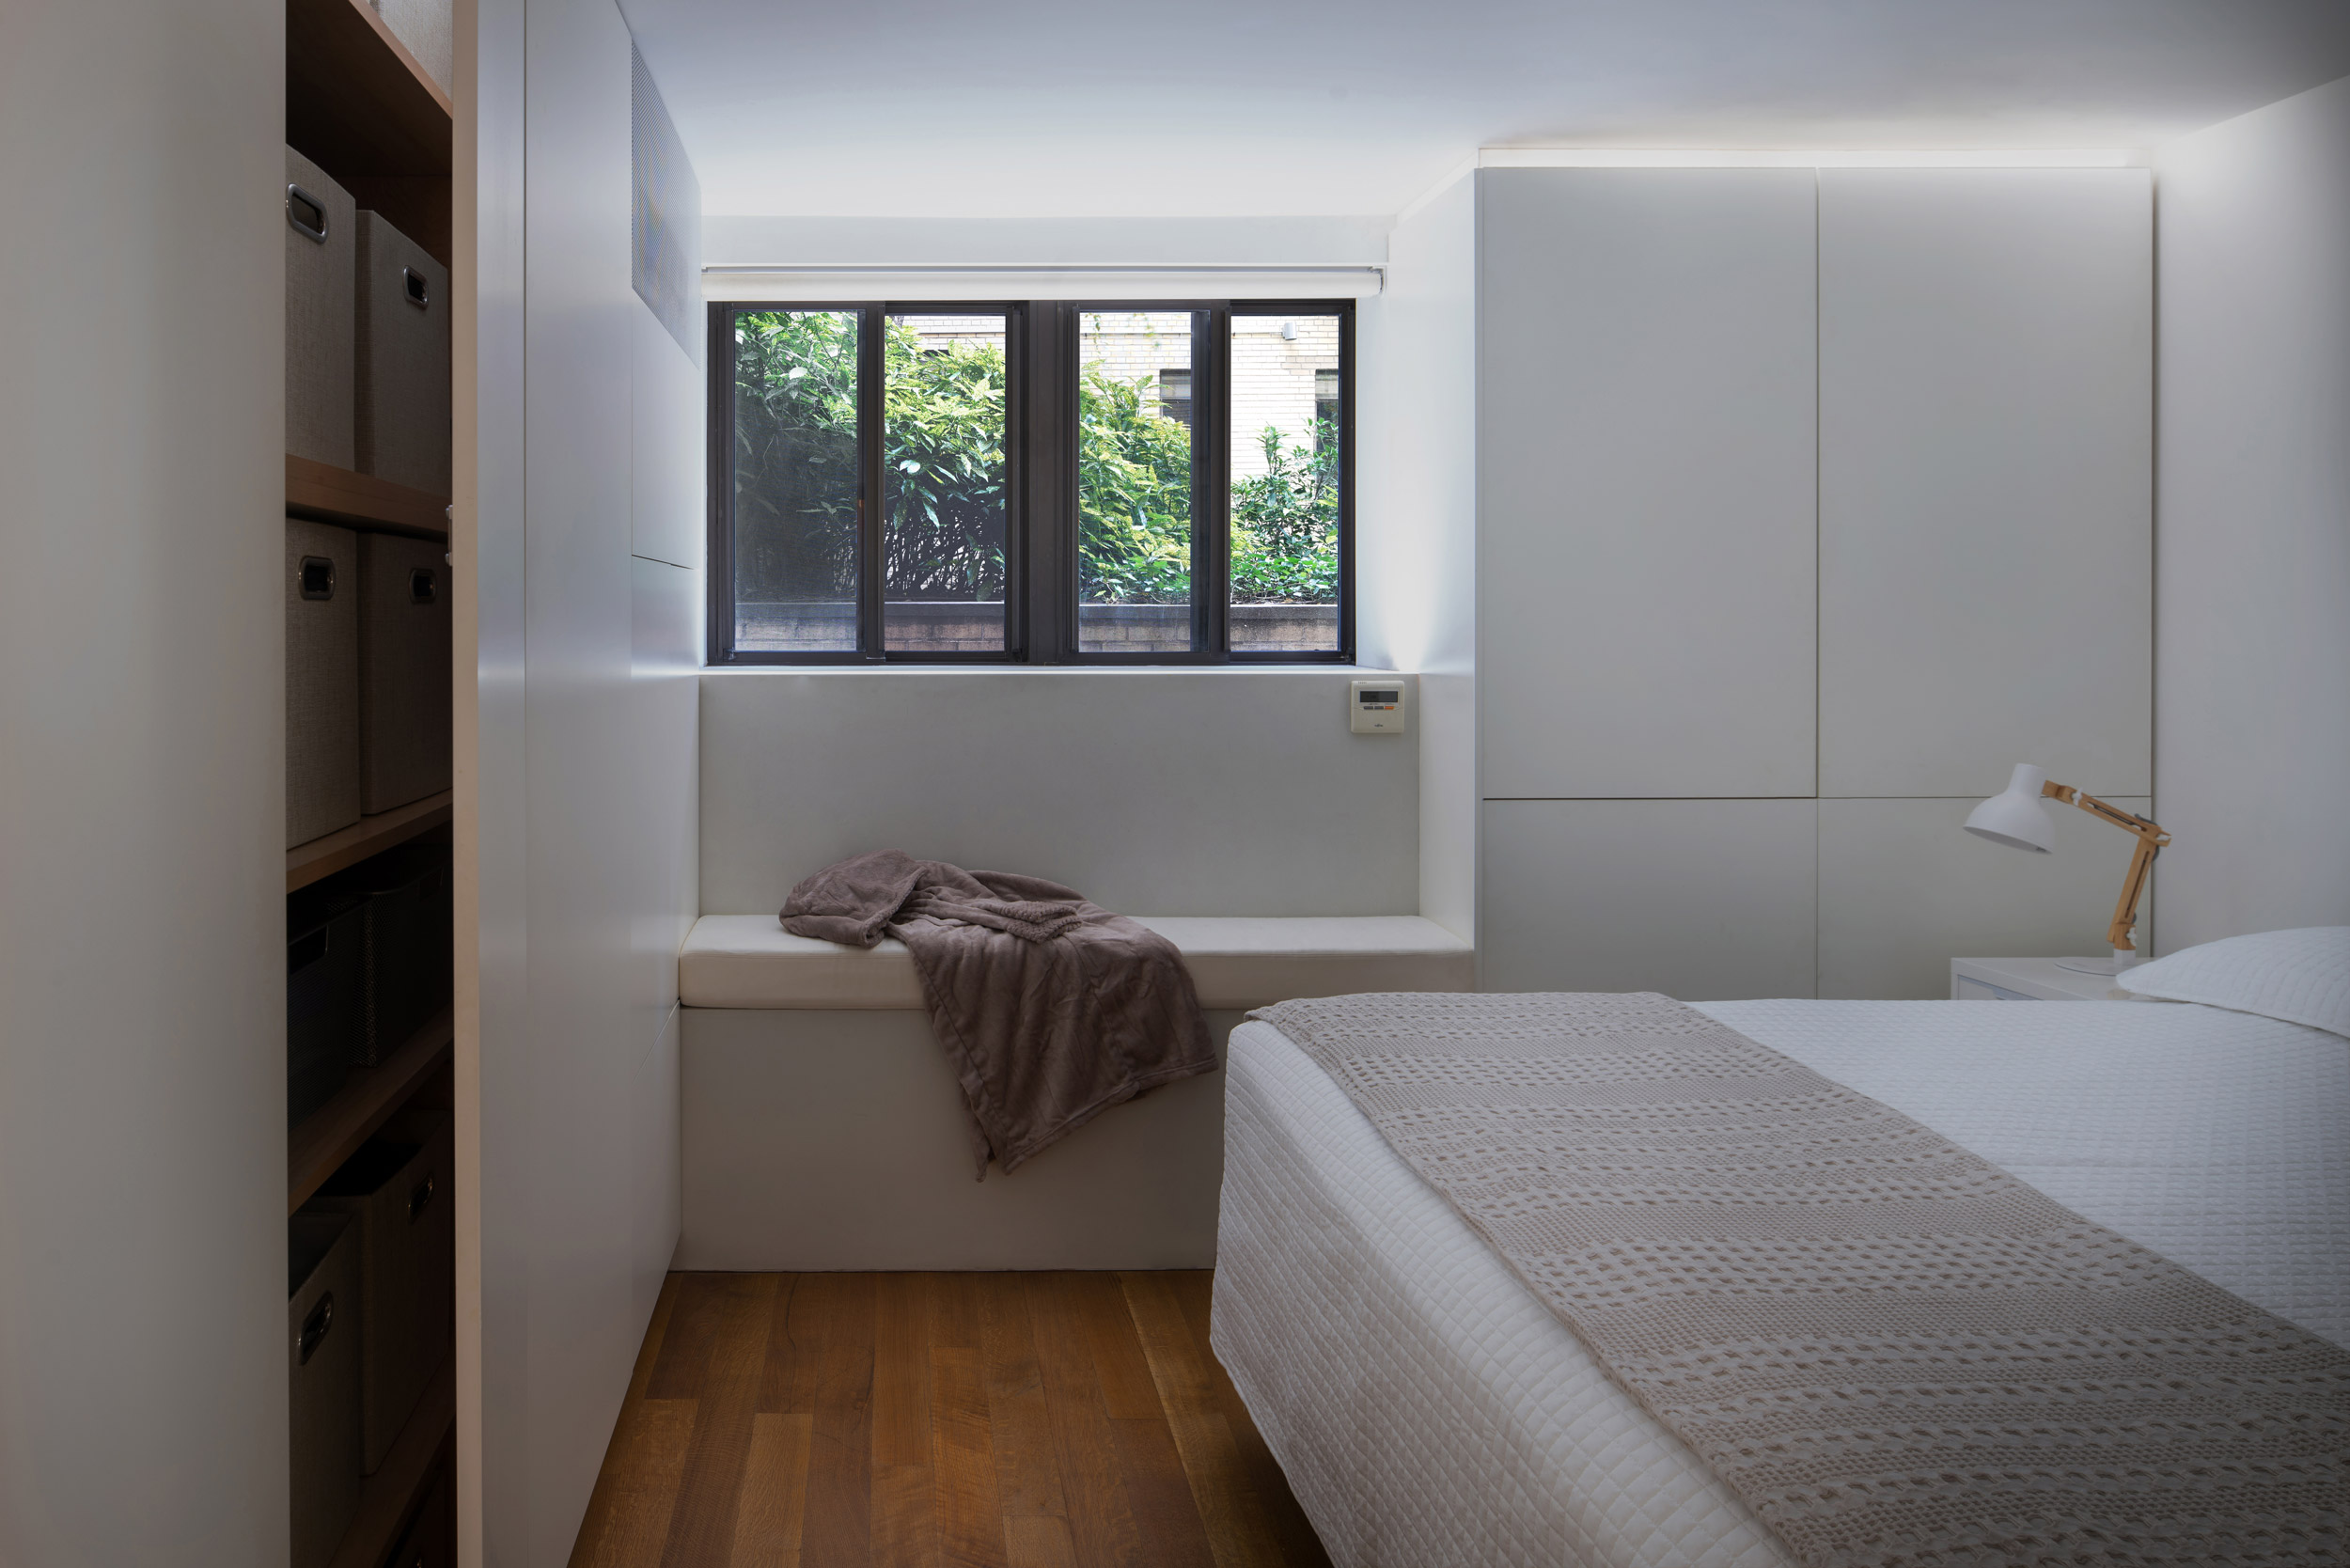 Interiors Merit Award: Hopp Apartment by Martin Hopp Architect, in New York, NY. Photo: Fei Liu.